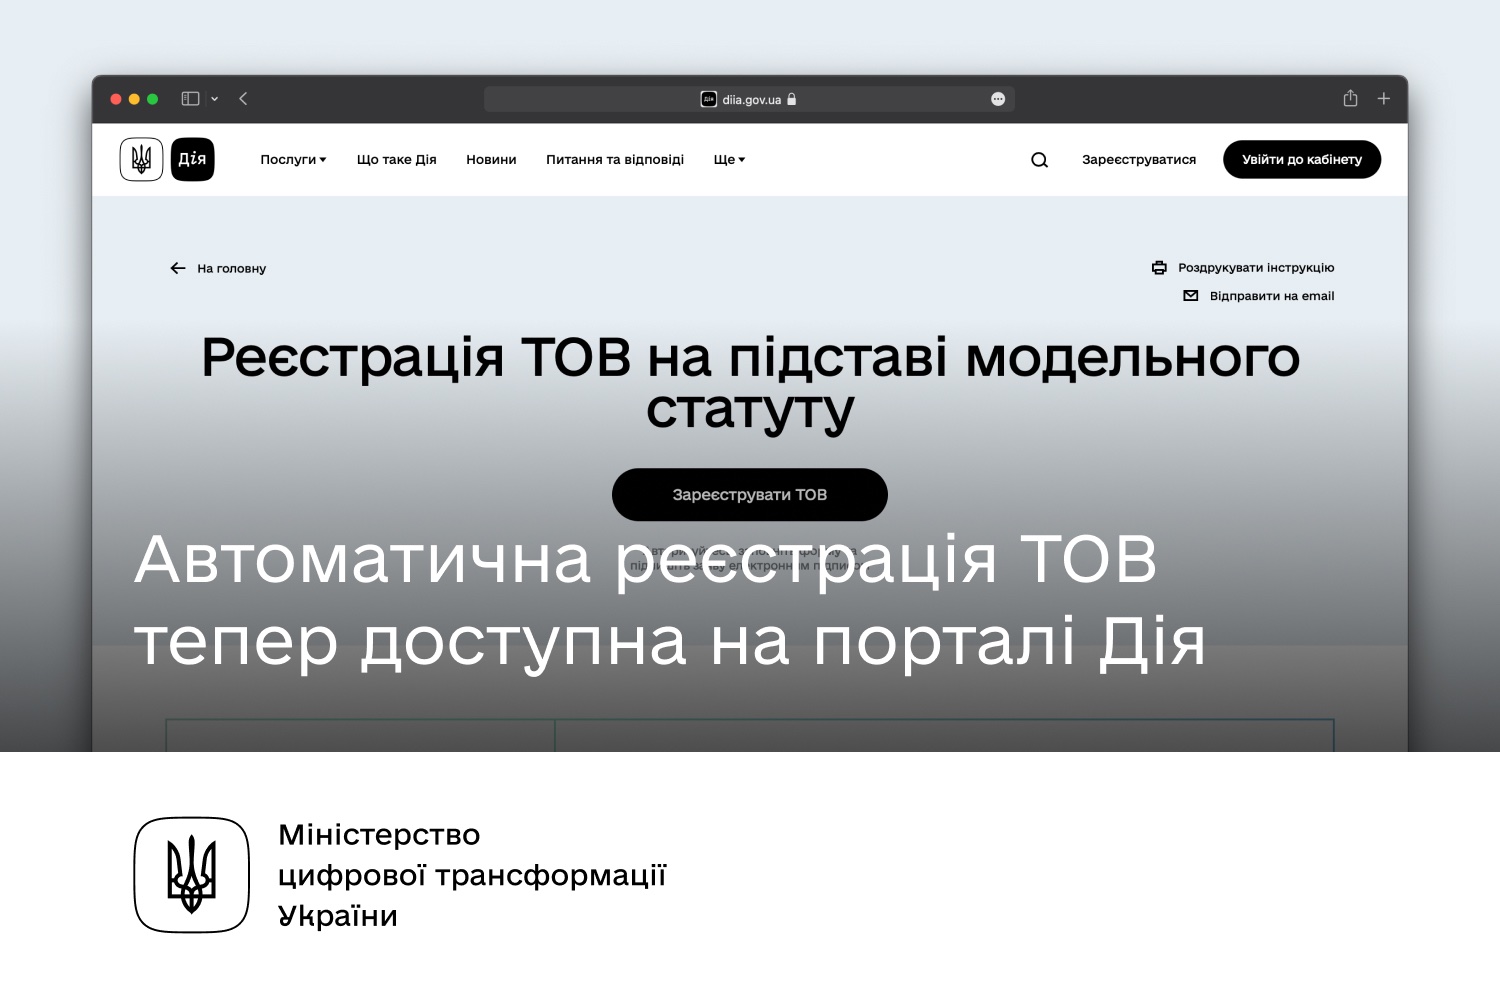 Михайло Федоров: Автоматична реєстрація ТОВ тепер доступна на порталі Дія